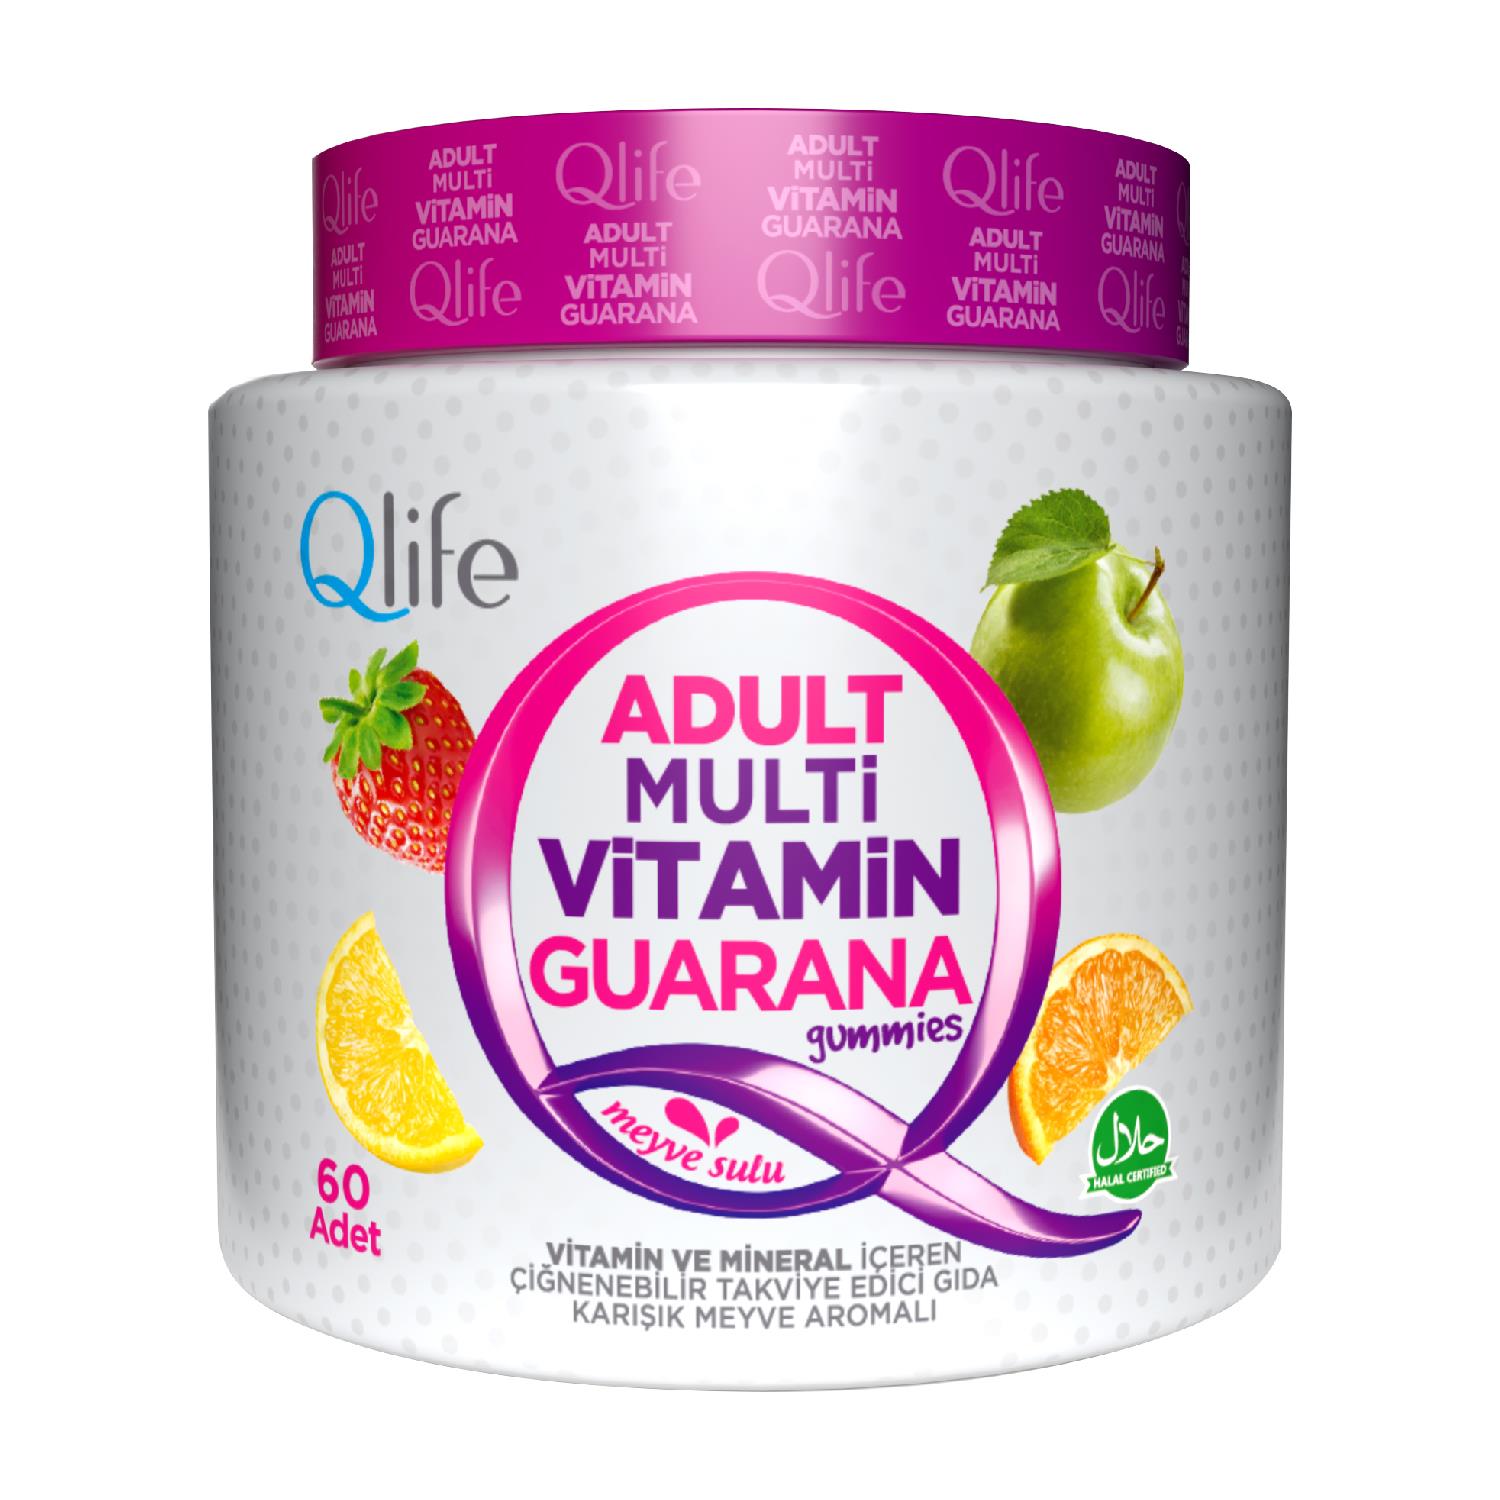 Qlife Adult Multivitamin Guarana Gummies 60 Çiğnenebilir Tablet